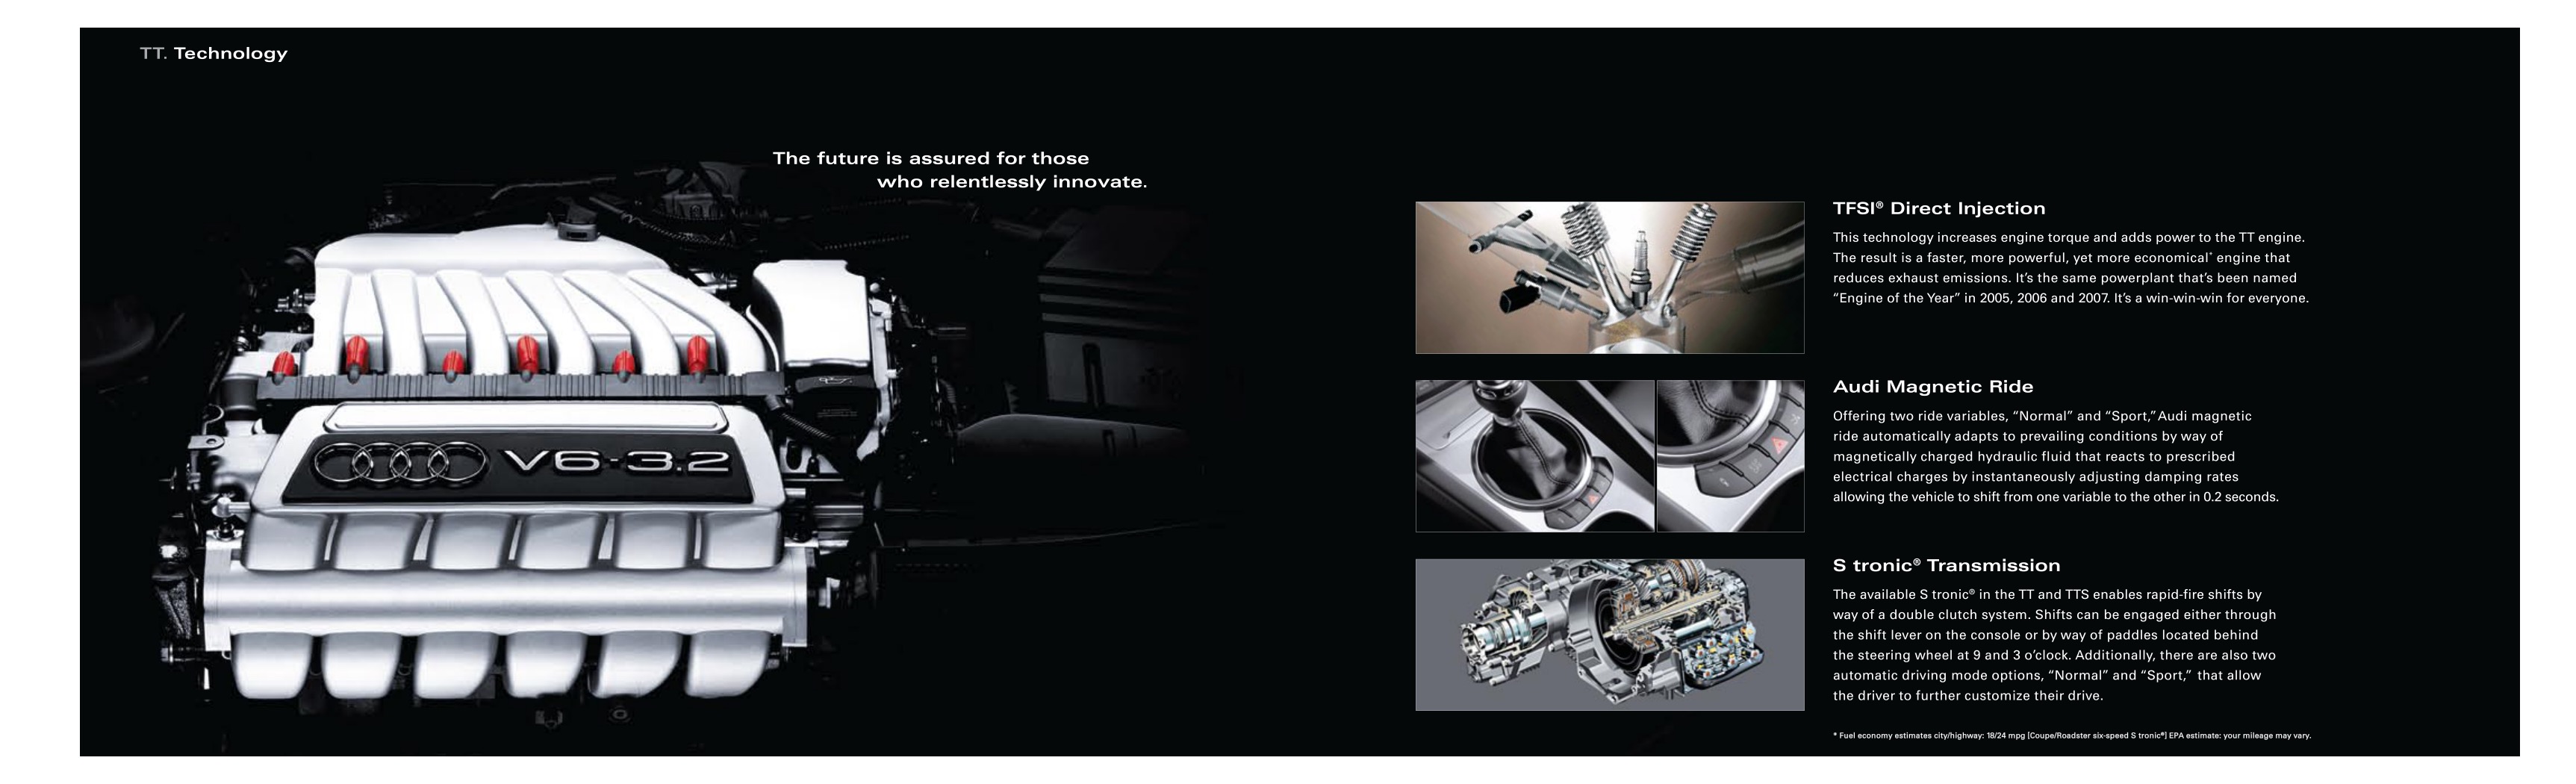 2009 Audi TT Brochure Page 3